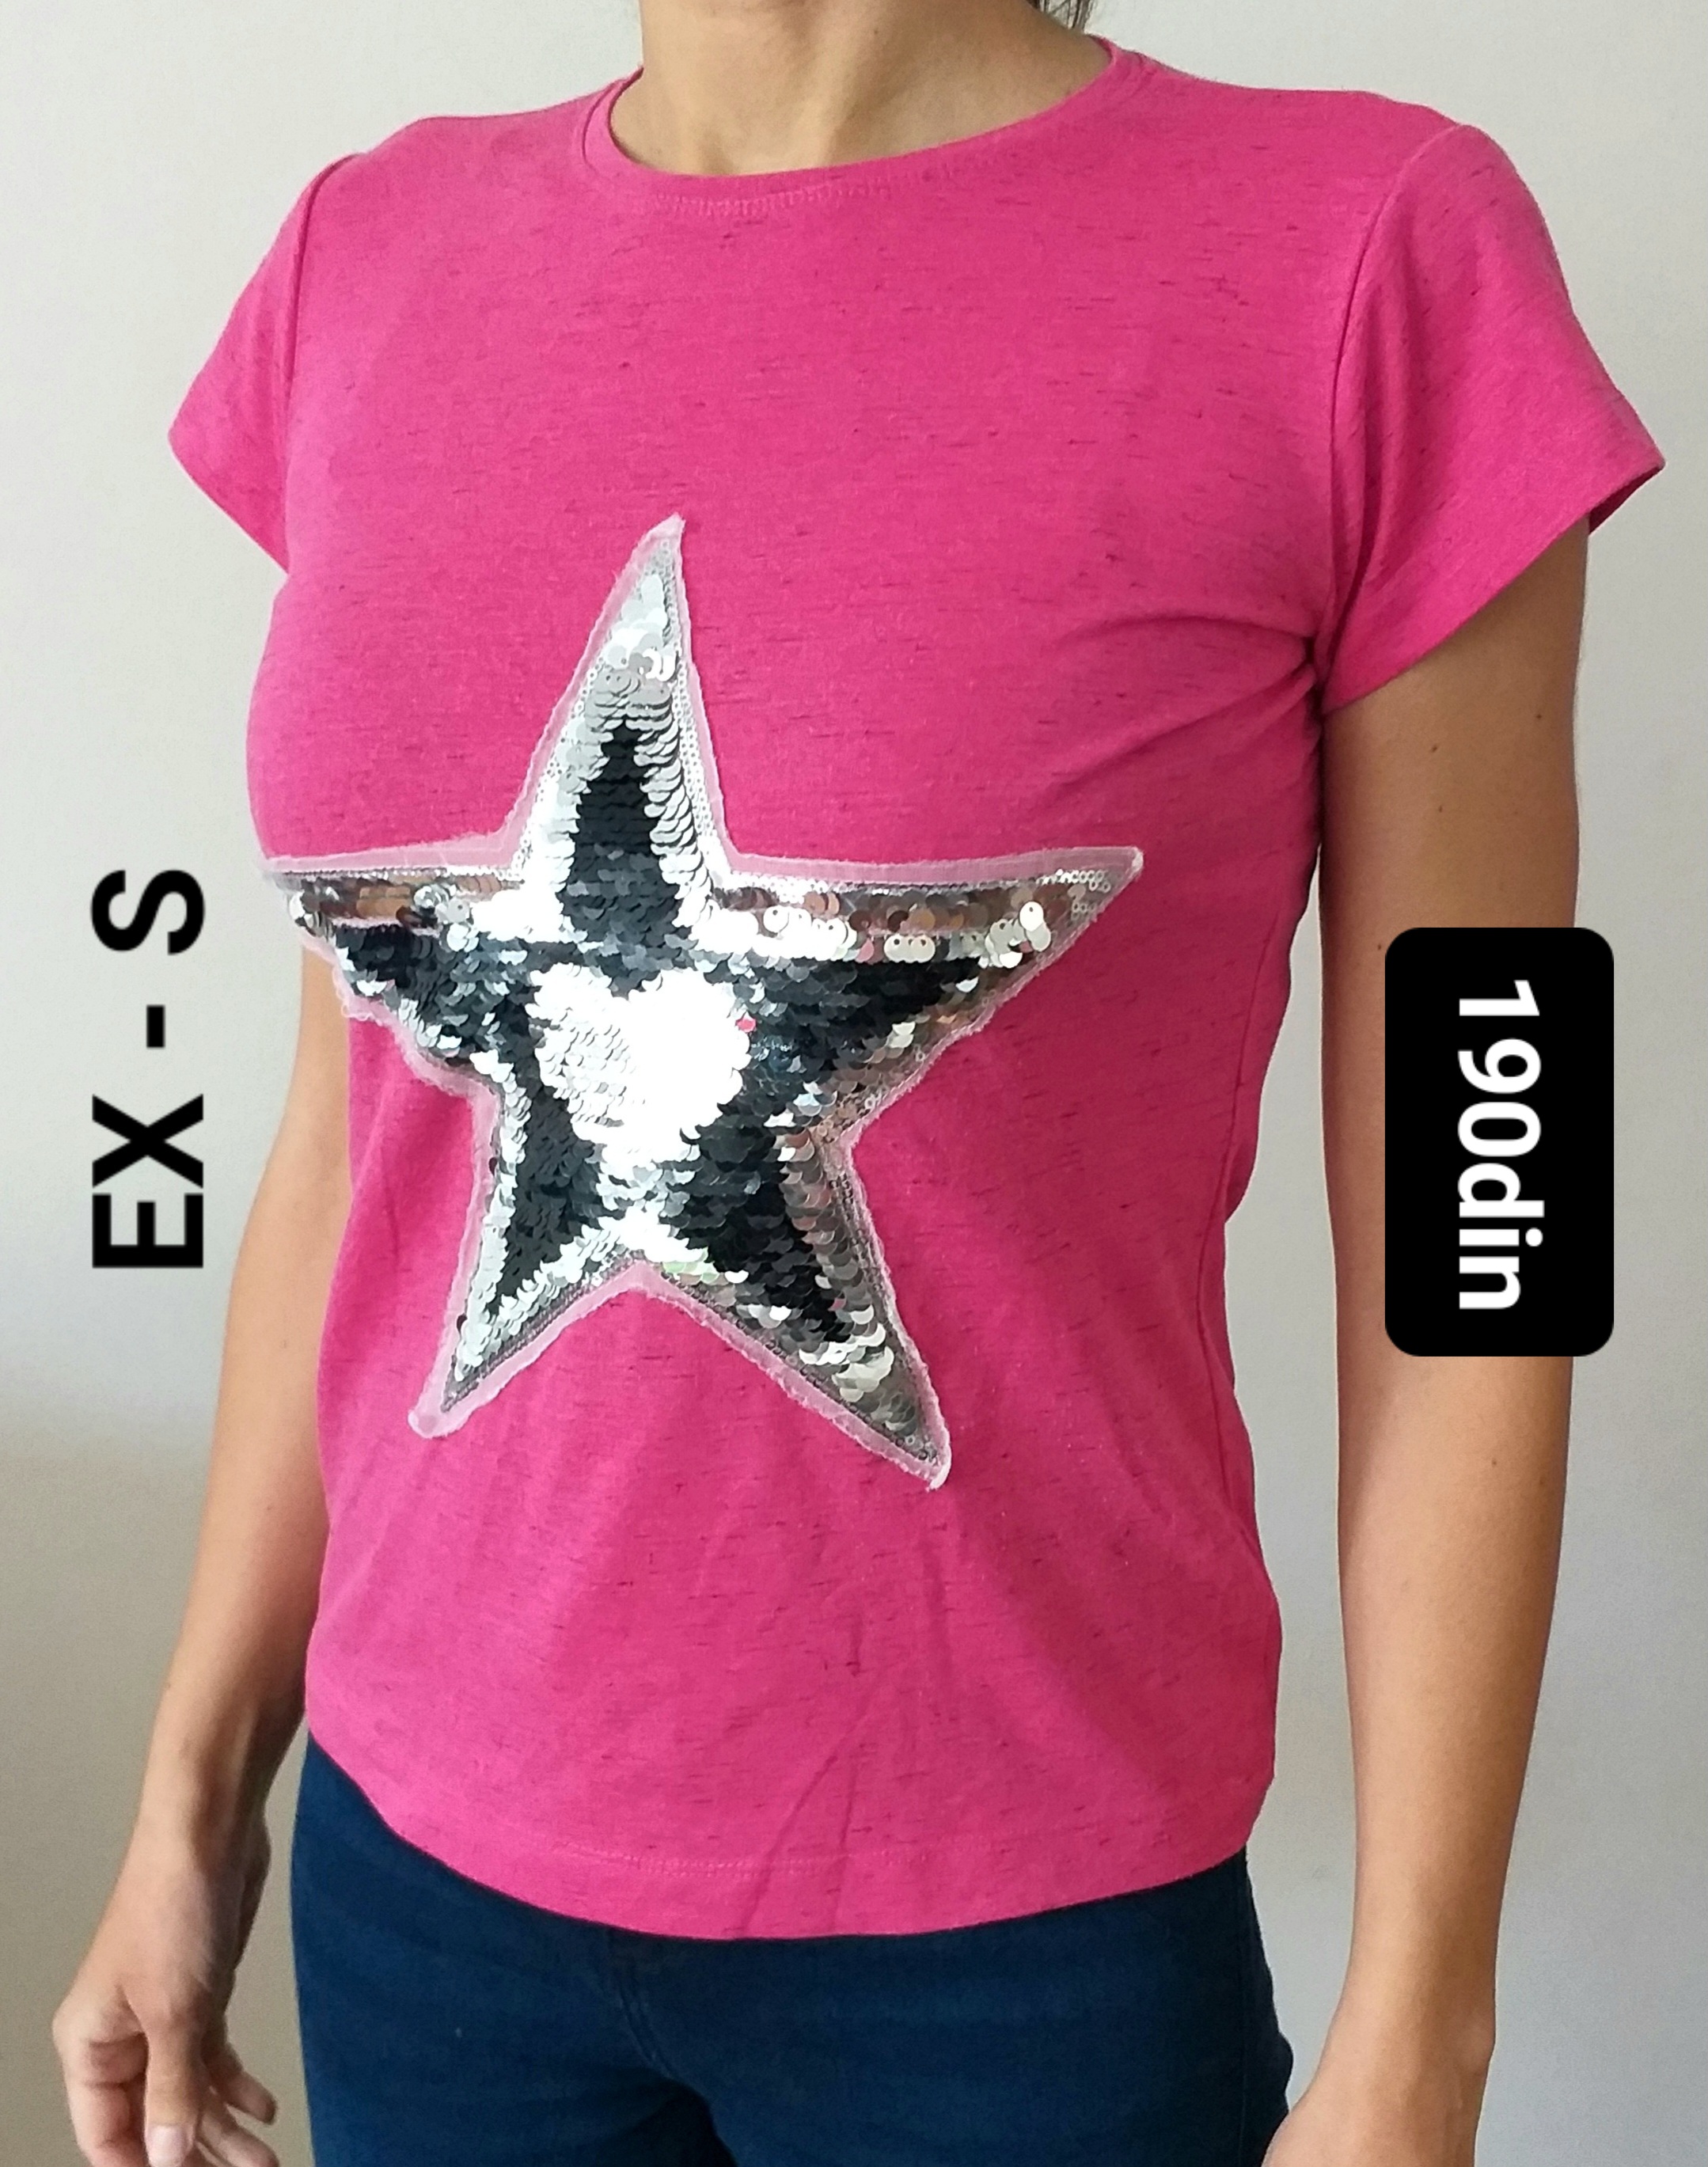 EX ženska majica roze zvezda srce S/36